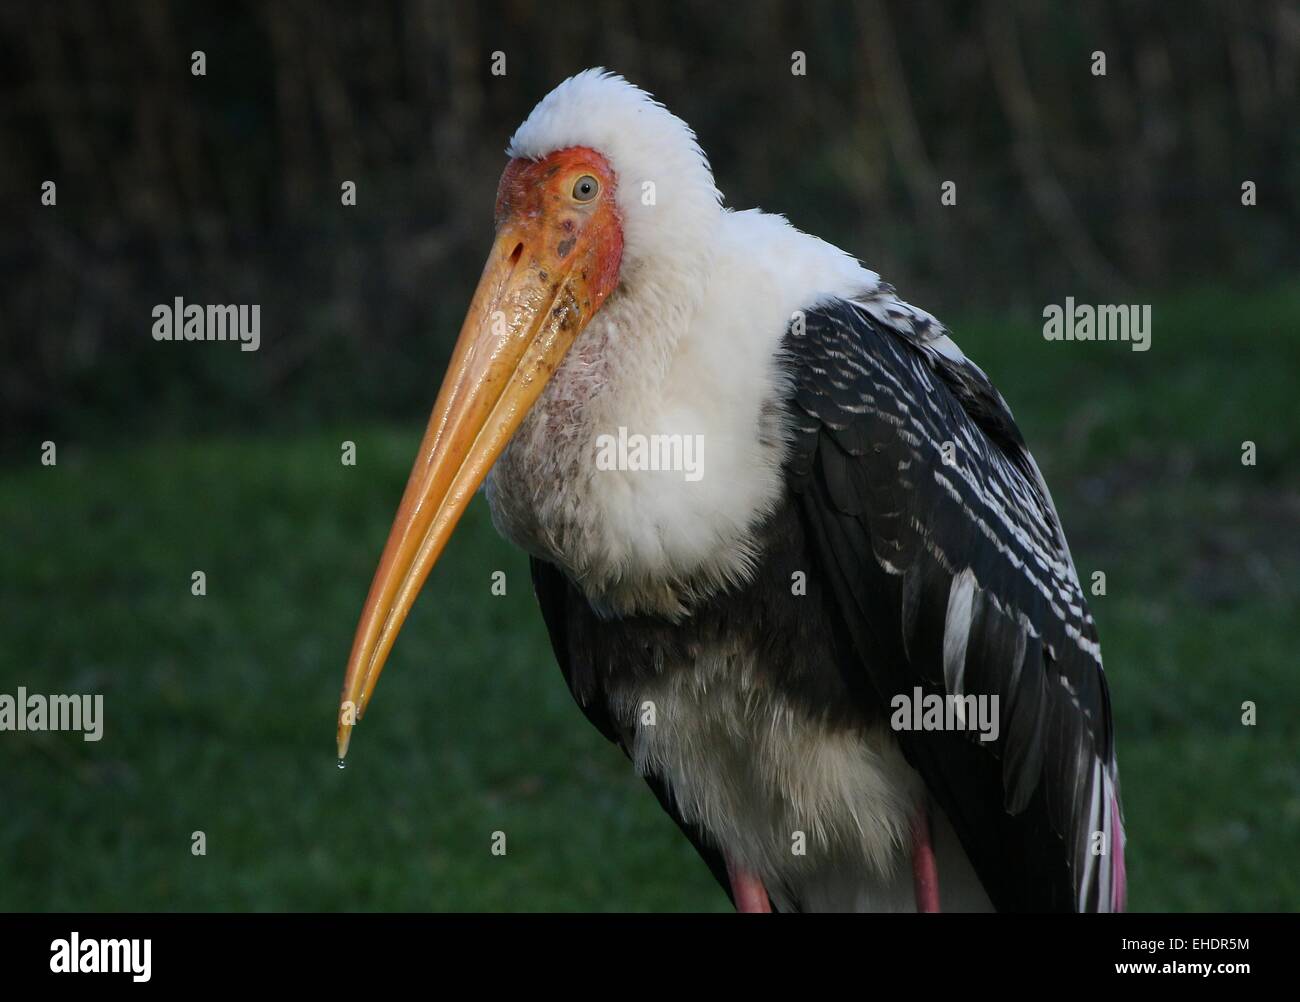 Stork (Mycteria leucocephala peint) Gros plan du haut du corps et la tête, face à huis clos Banque D'Images